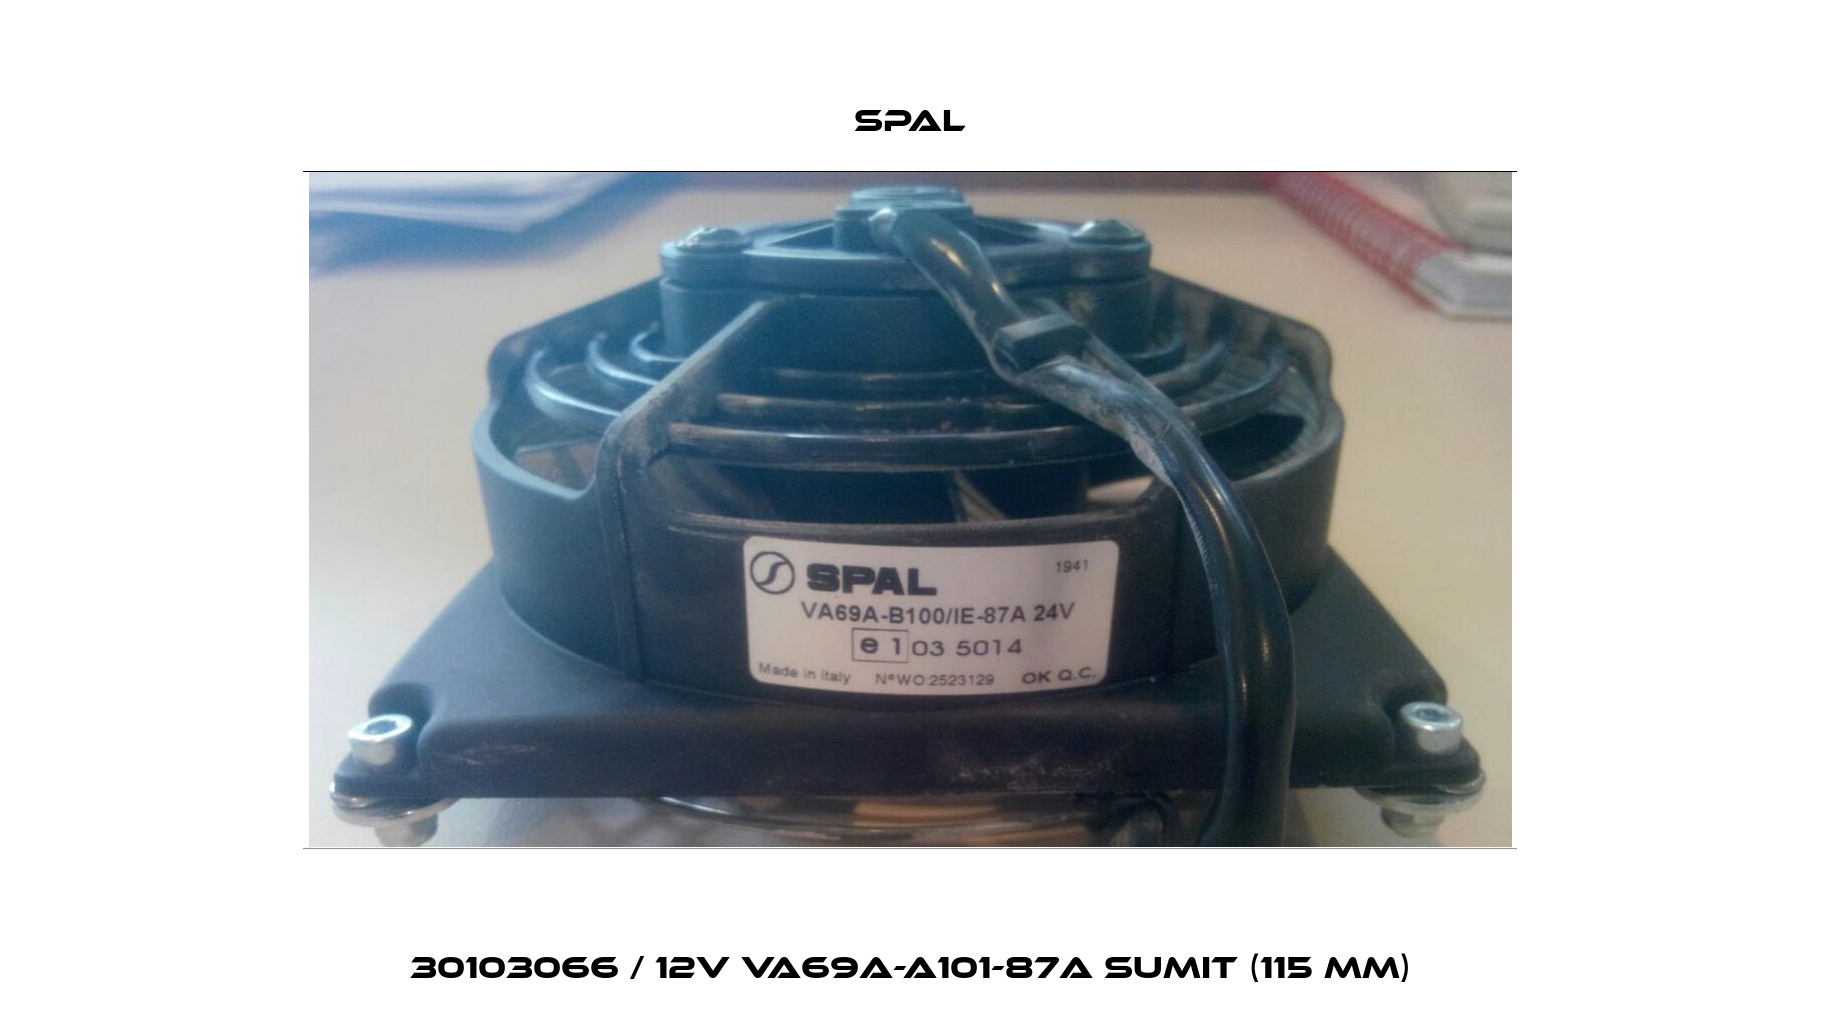 30103066 / 12V VA69A-A101-87A SUMIT (115 MM) SPAL